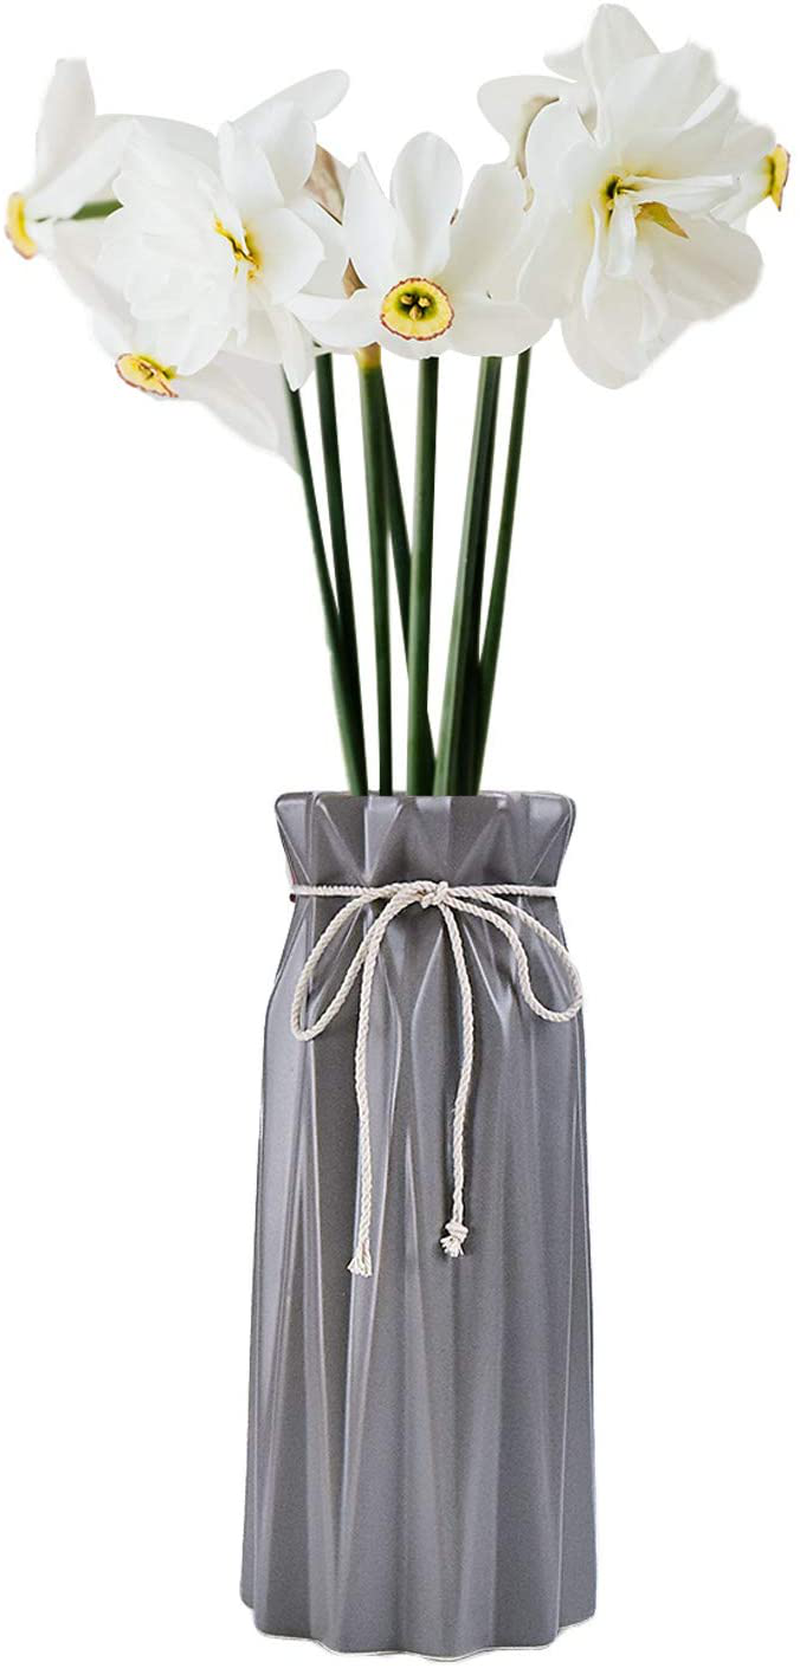 Mozing Green Flower Ceramic Vases Decorative Flower Vase for Home Bedroom Office Wedding Ceremony , Desktop Center Vase (Green) Home & Garden > Decor > Vases Mozing Gray  